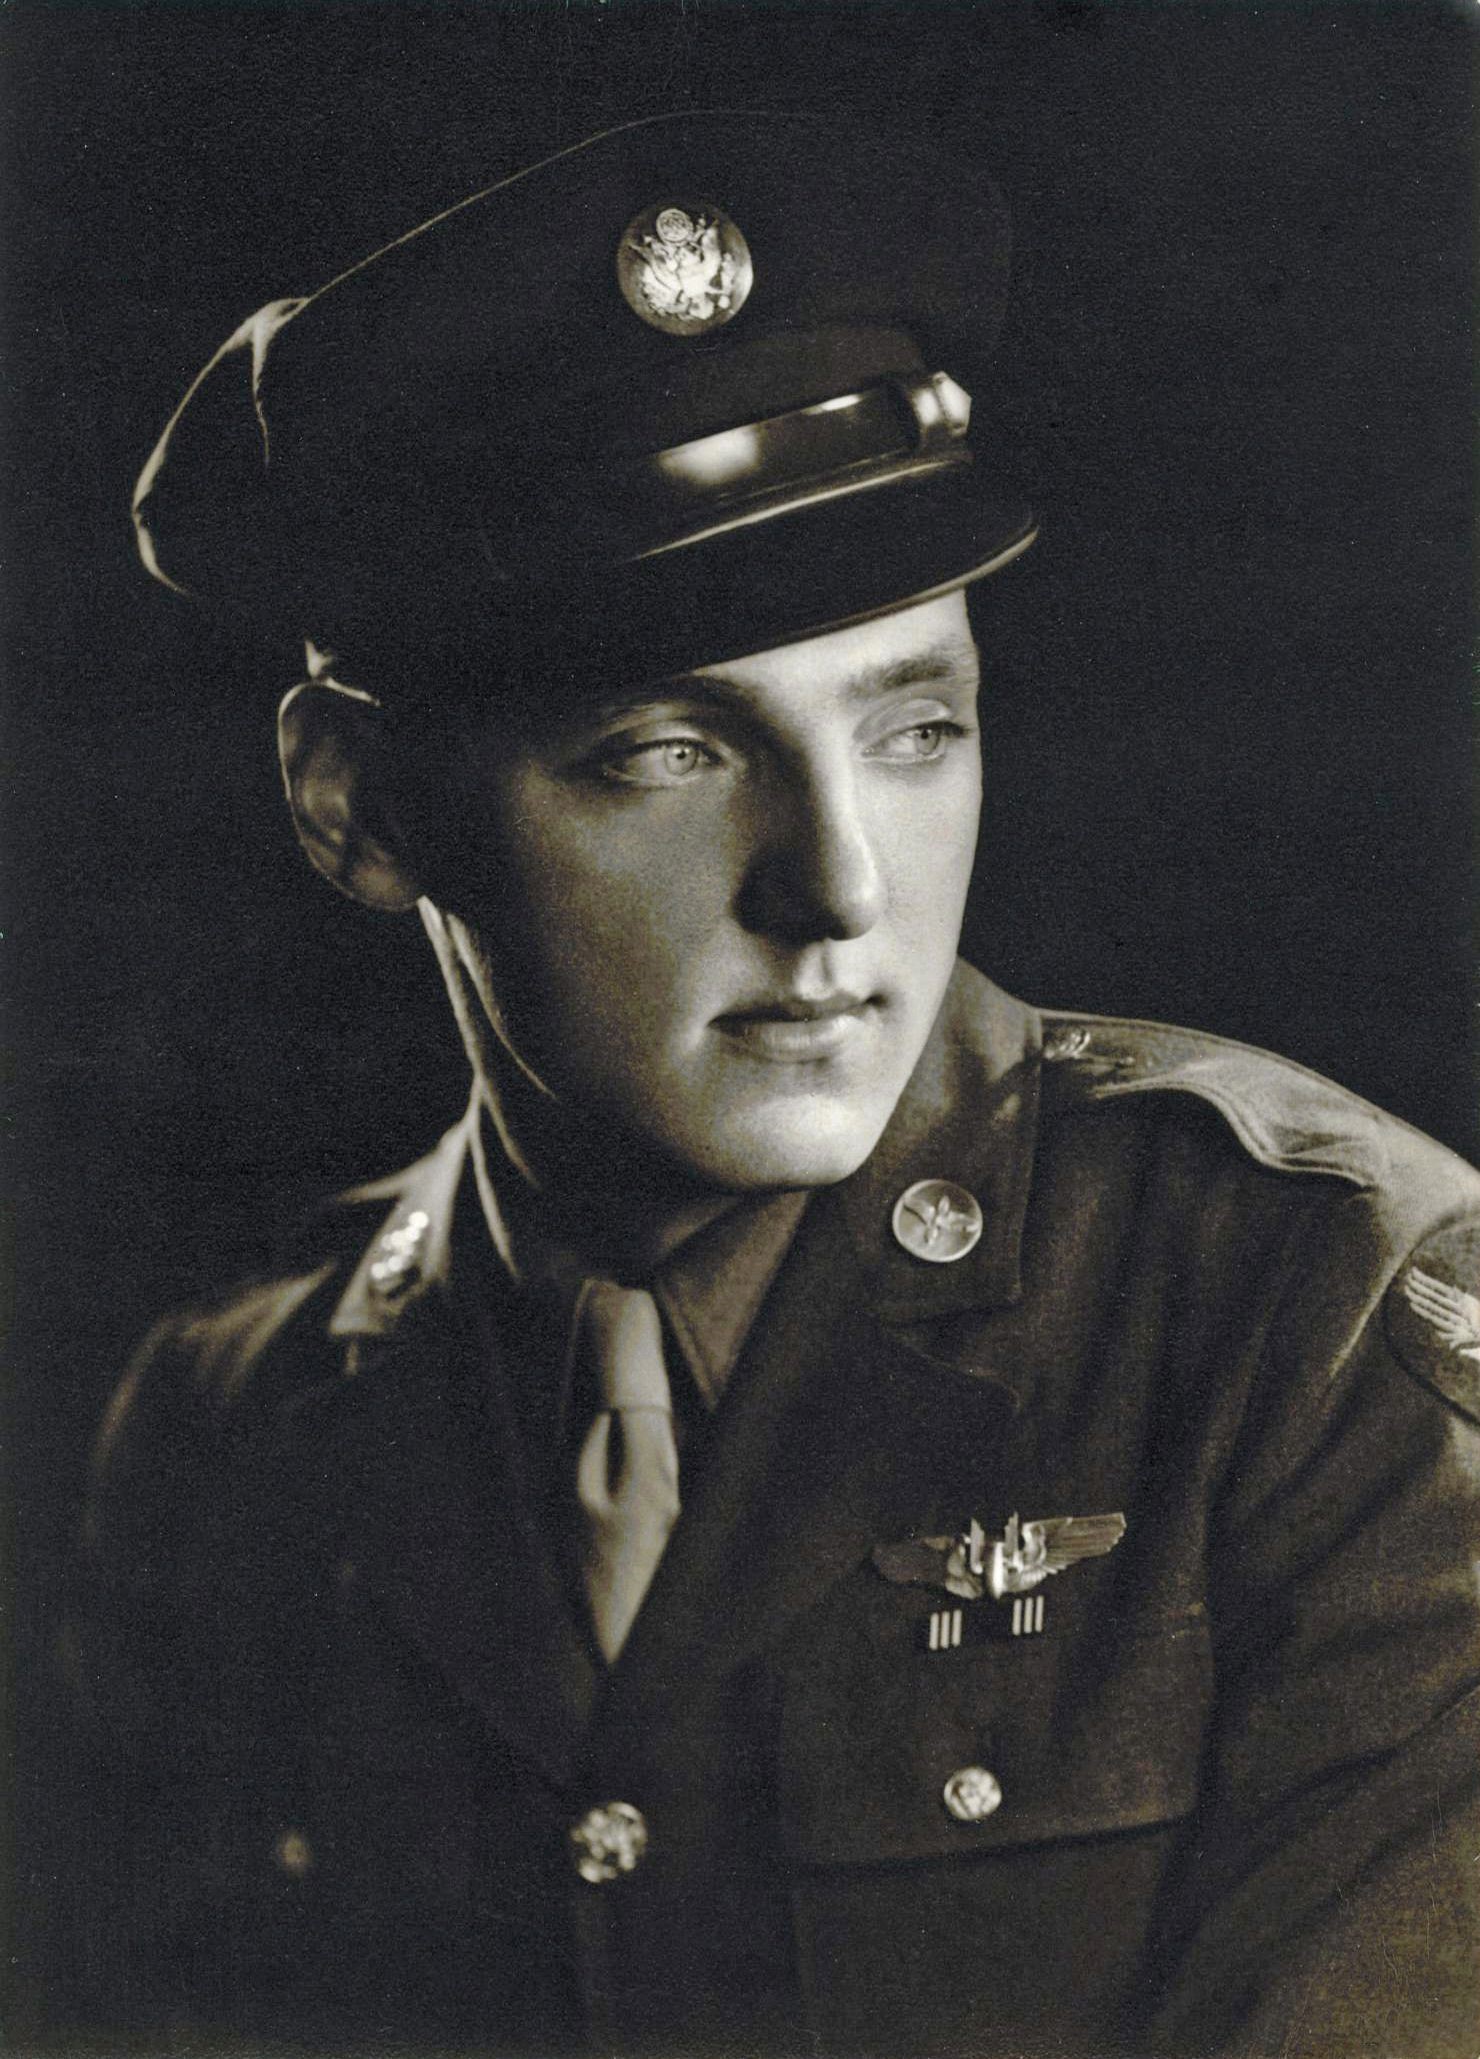 Sgt. Ernest C. Pratt USAAF